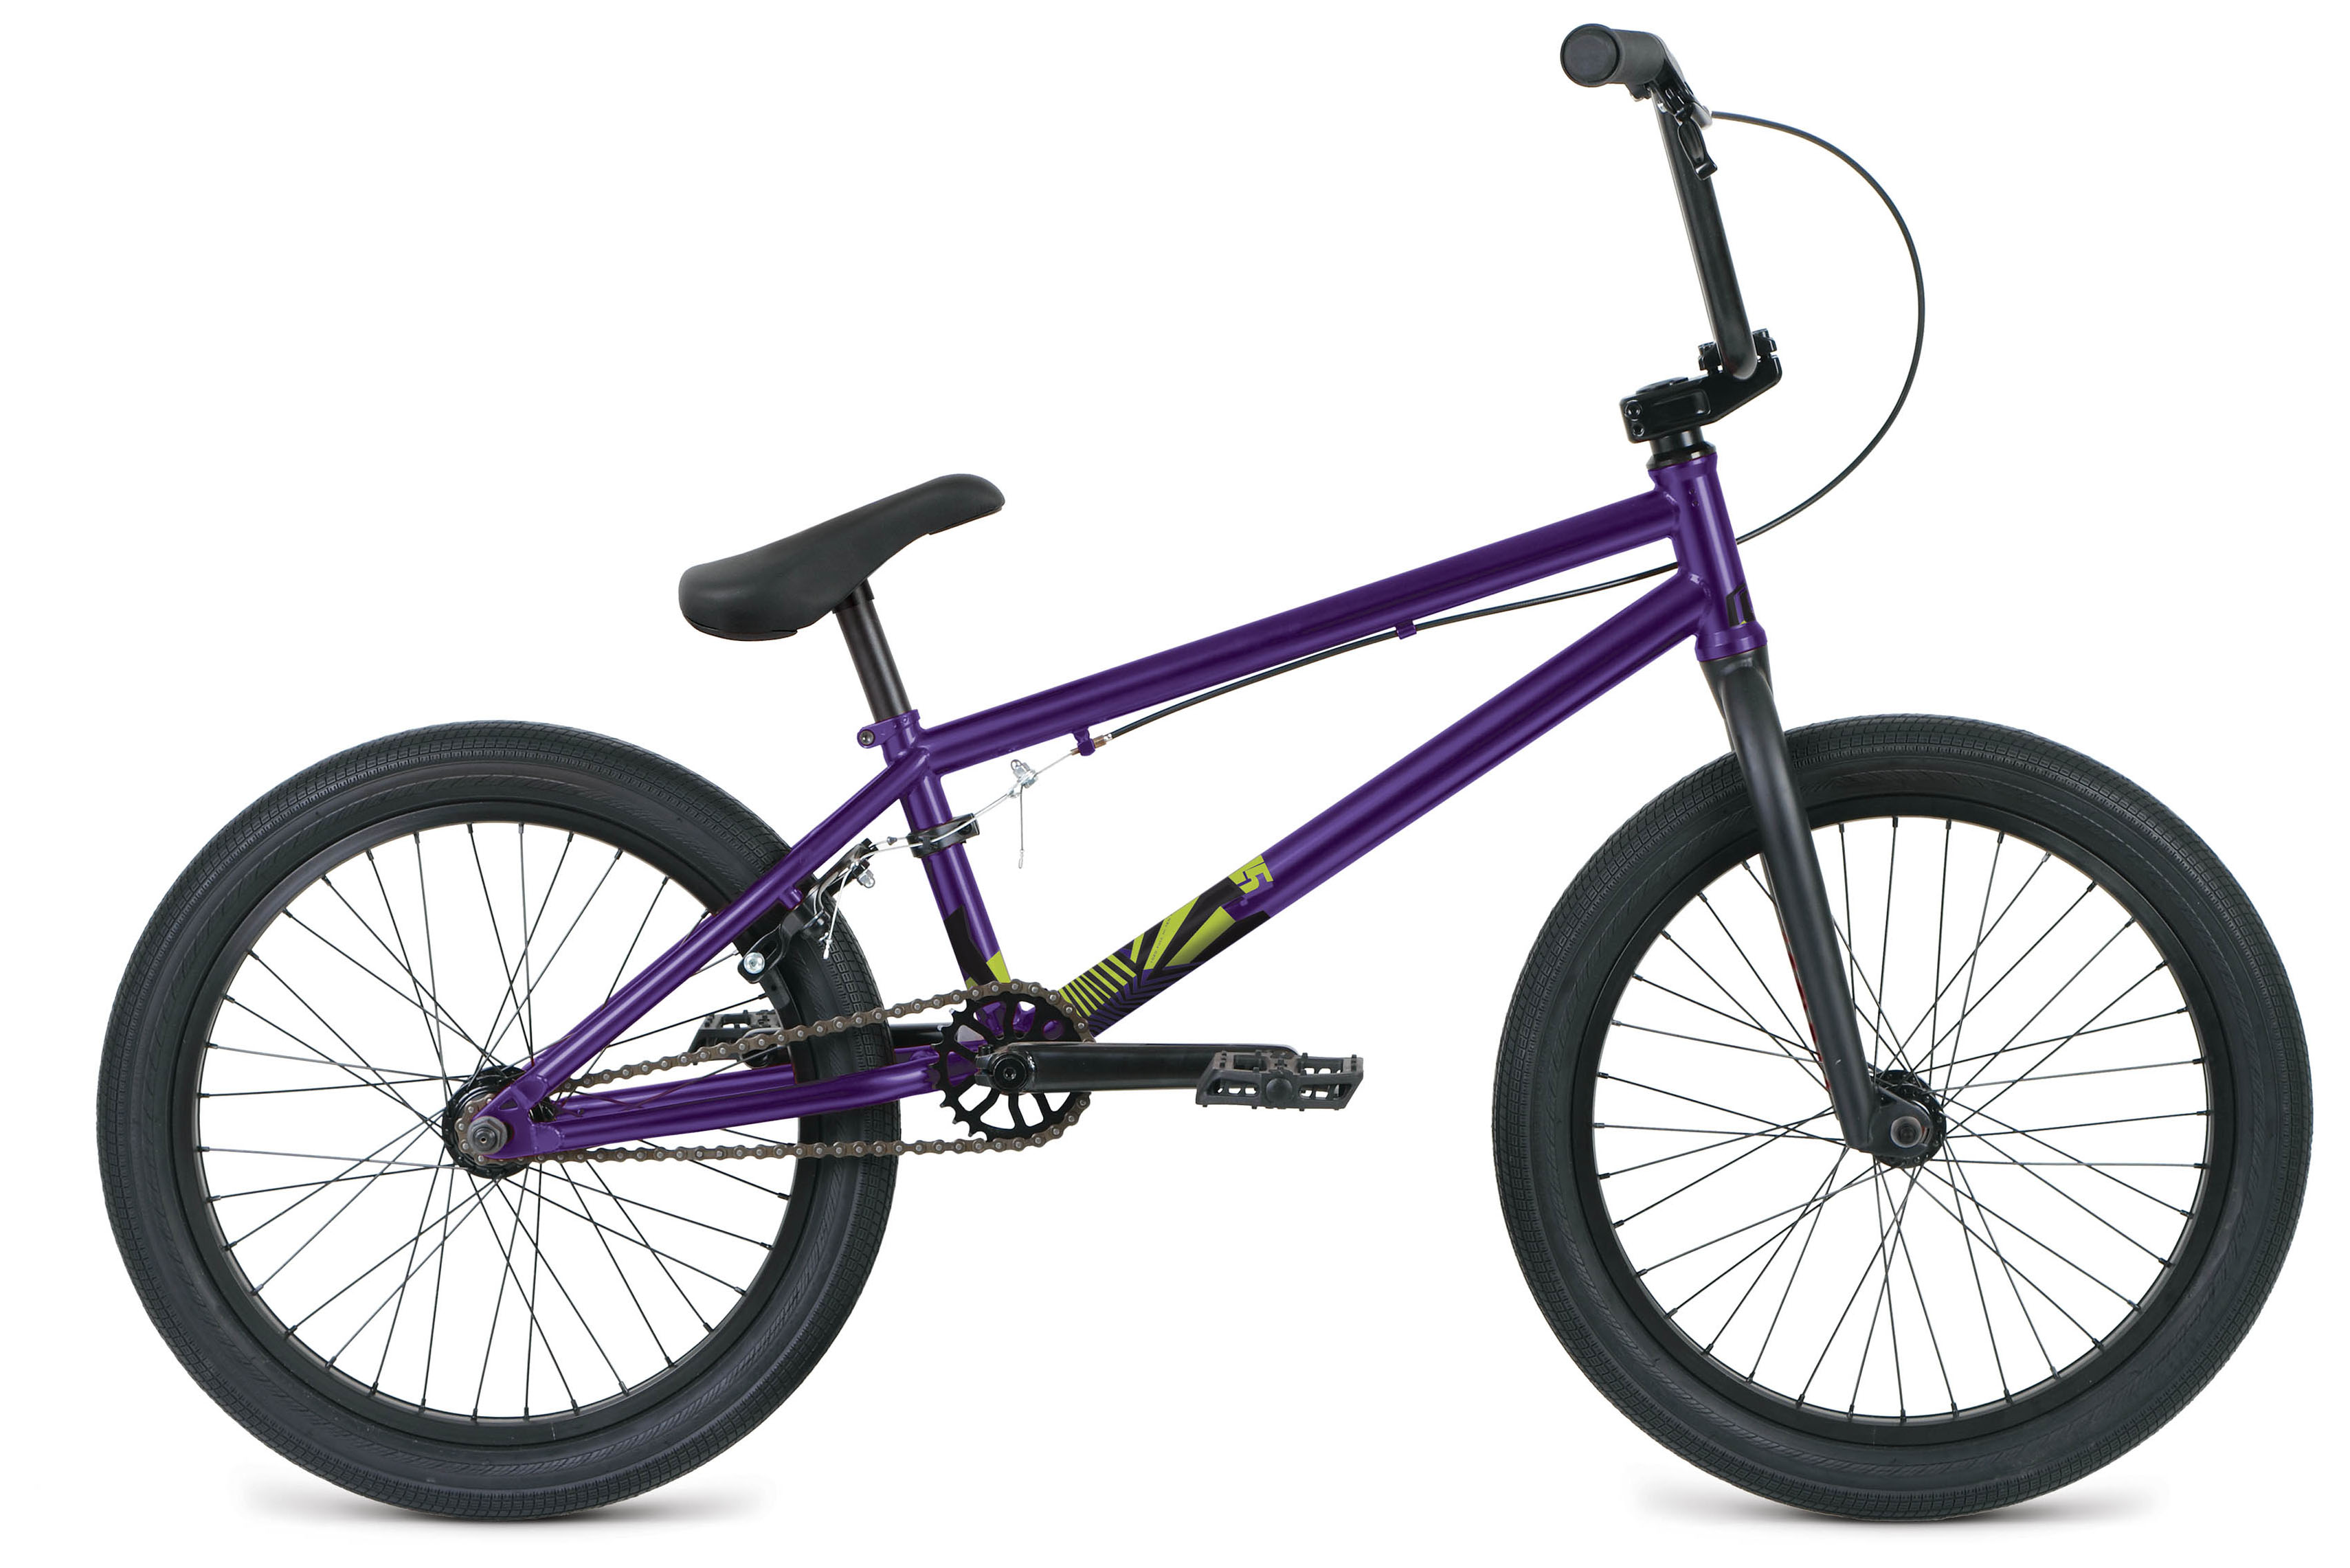  Отзывы о Велосипеде BMX Format 3215 20 2019